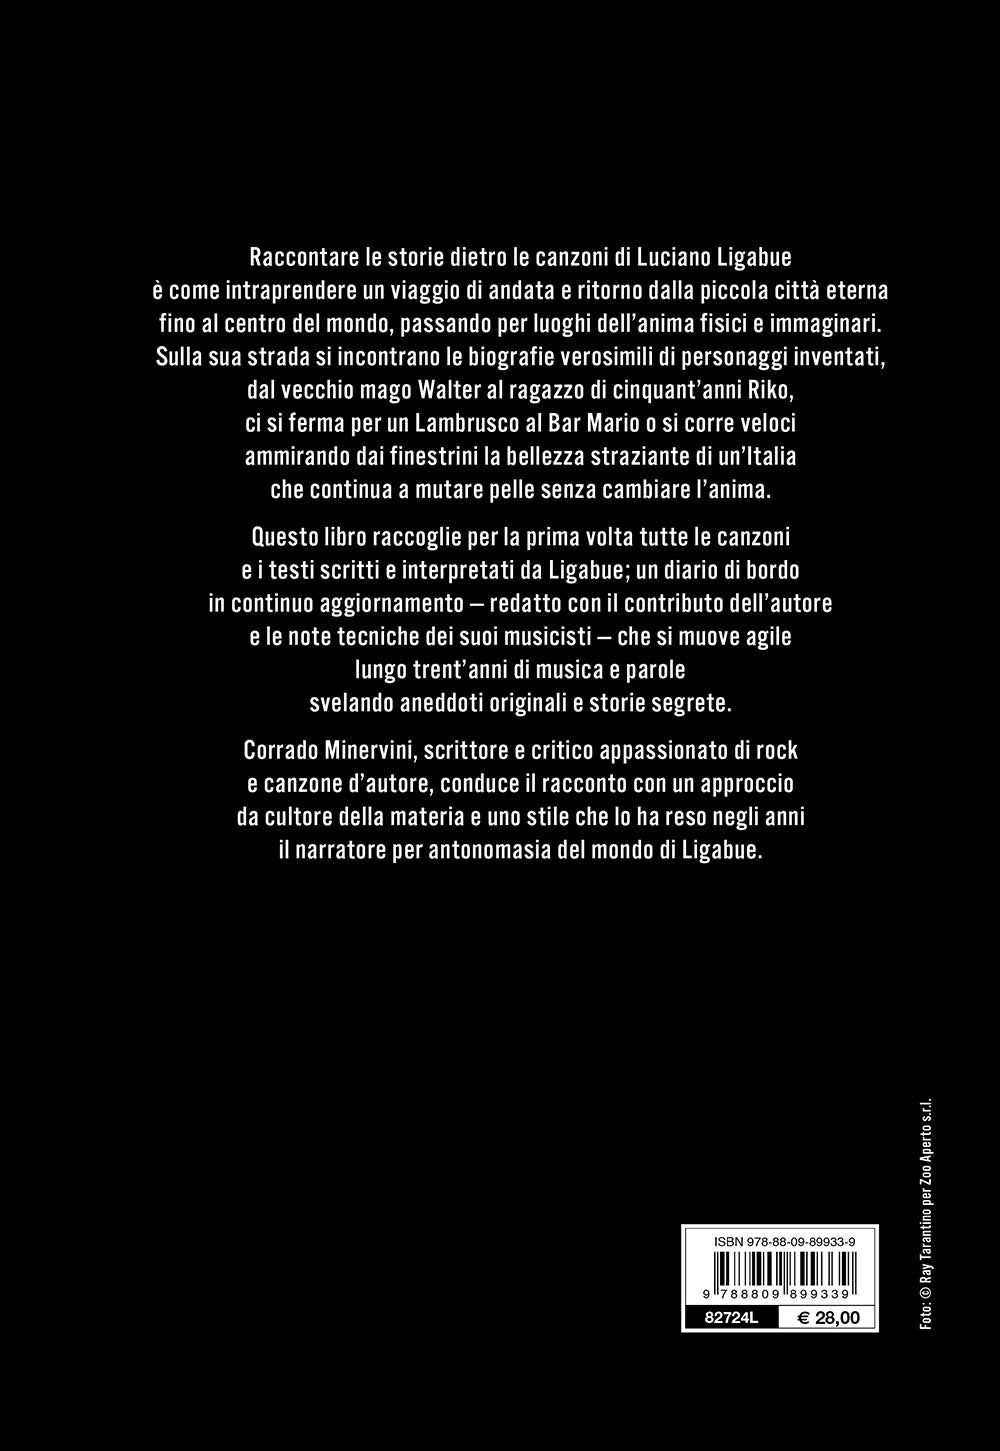 Luciano Ligabue. I testi. La storia delle canzoni